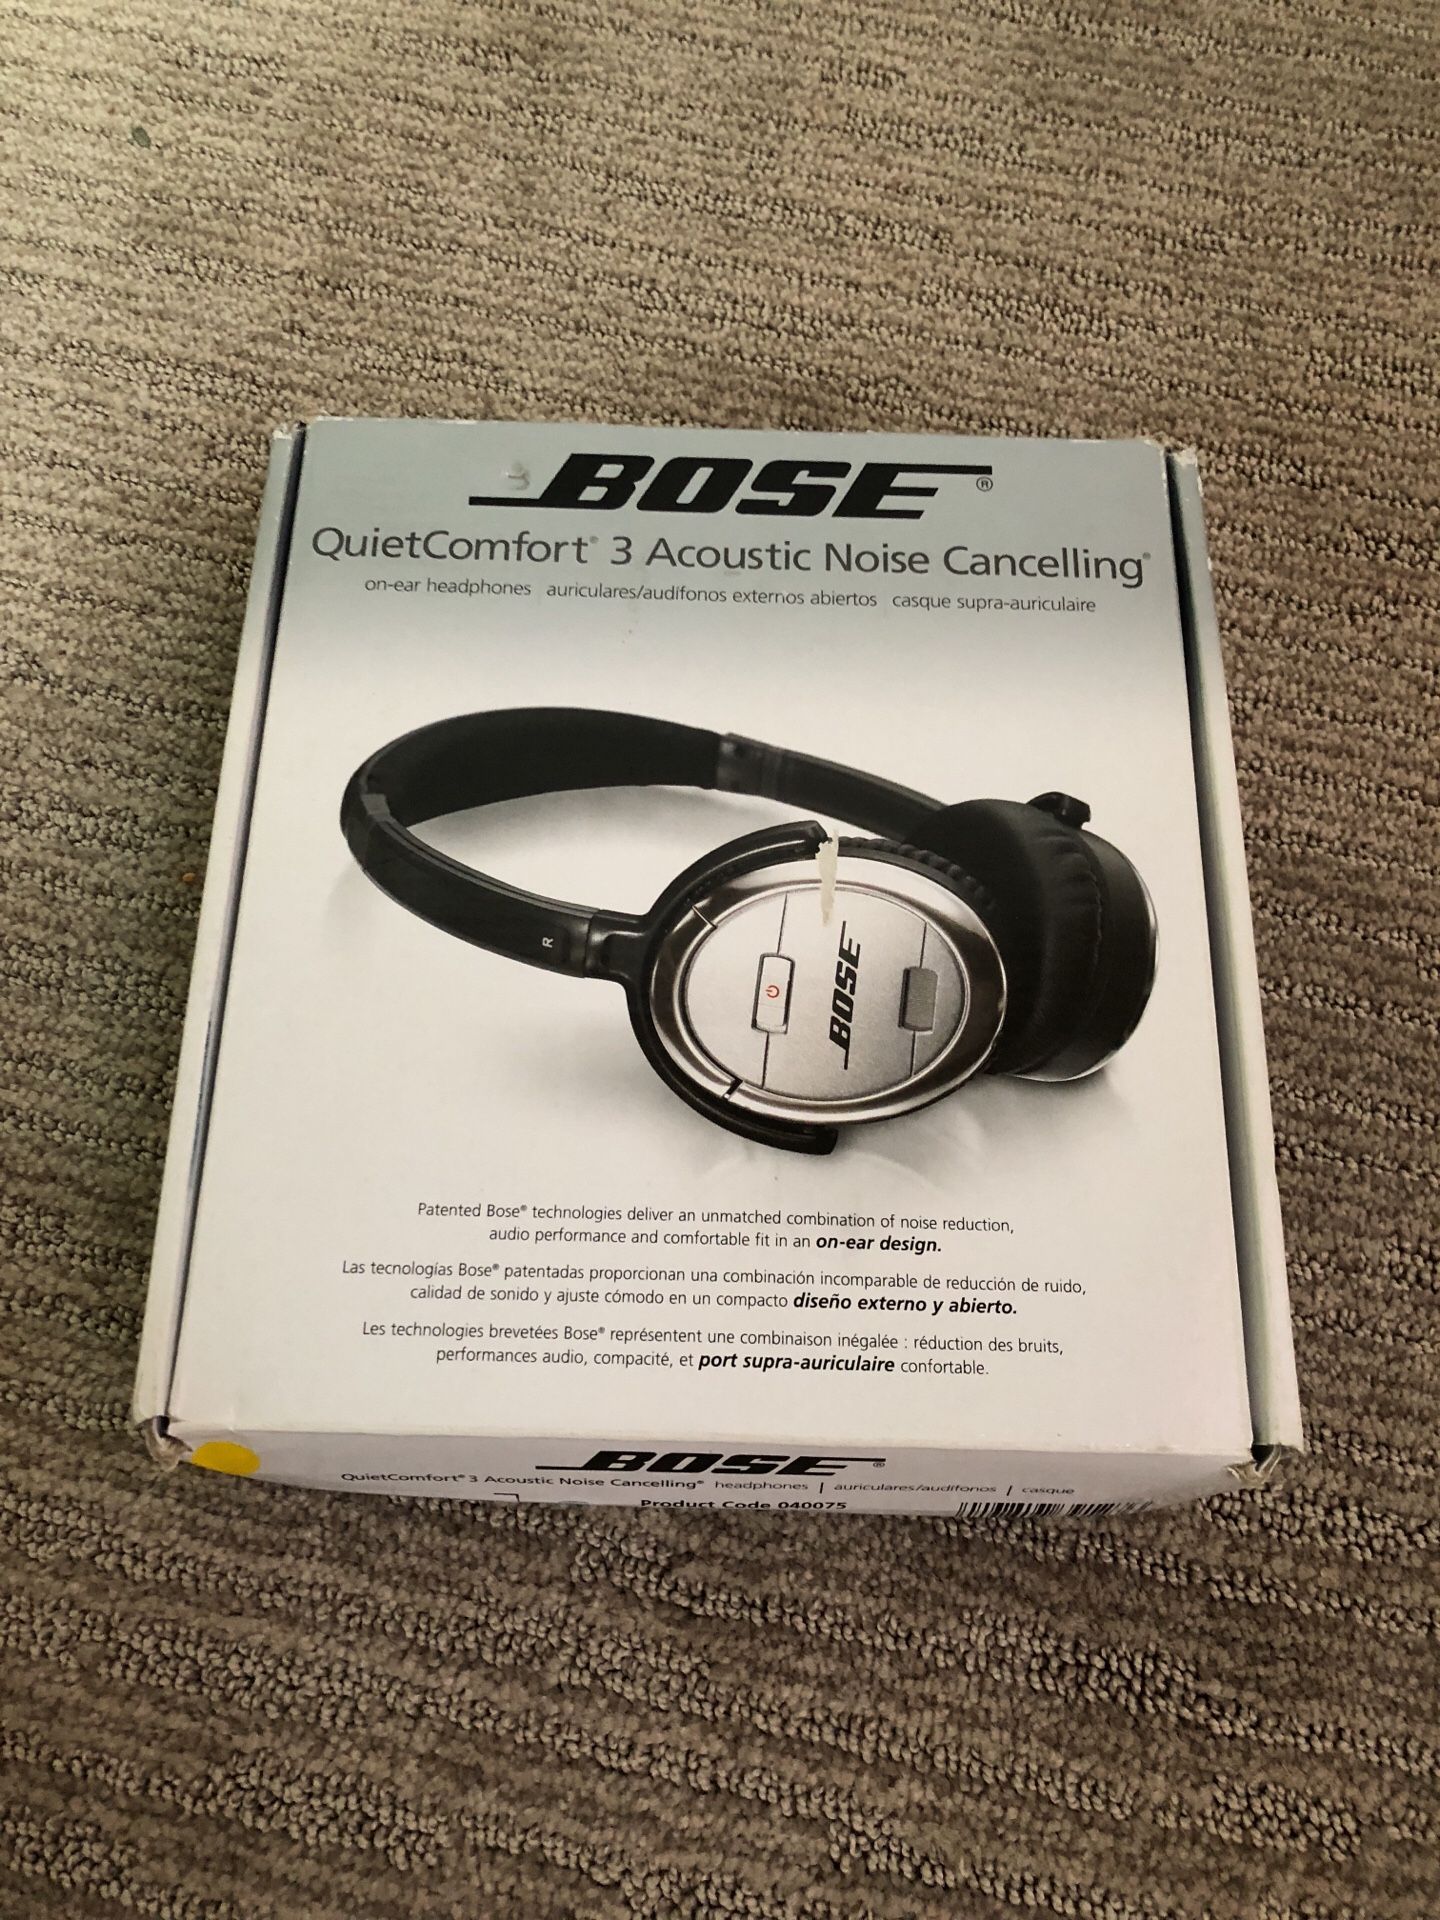 Bose quit comfort 3 acoustic noise cancelling